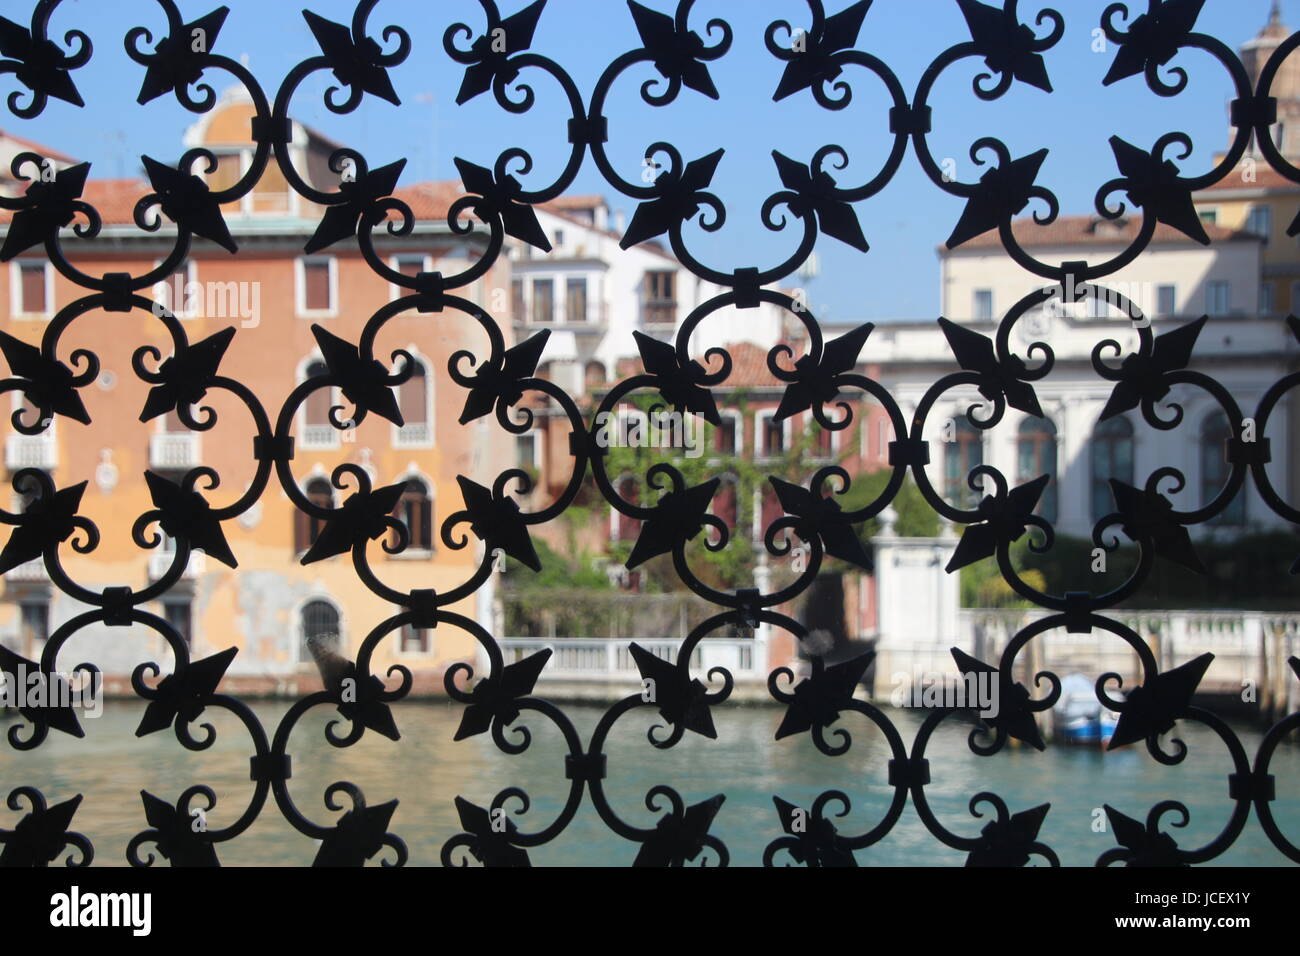 Le Grand Canal à Venise, vue à travers une grille de fenêtre en fer forgé d'un palazzo. Venise, Italie, Europe. Banque D'Images